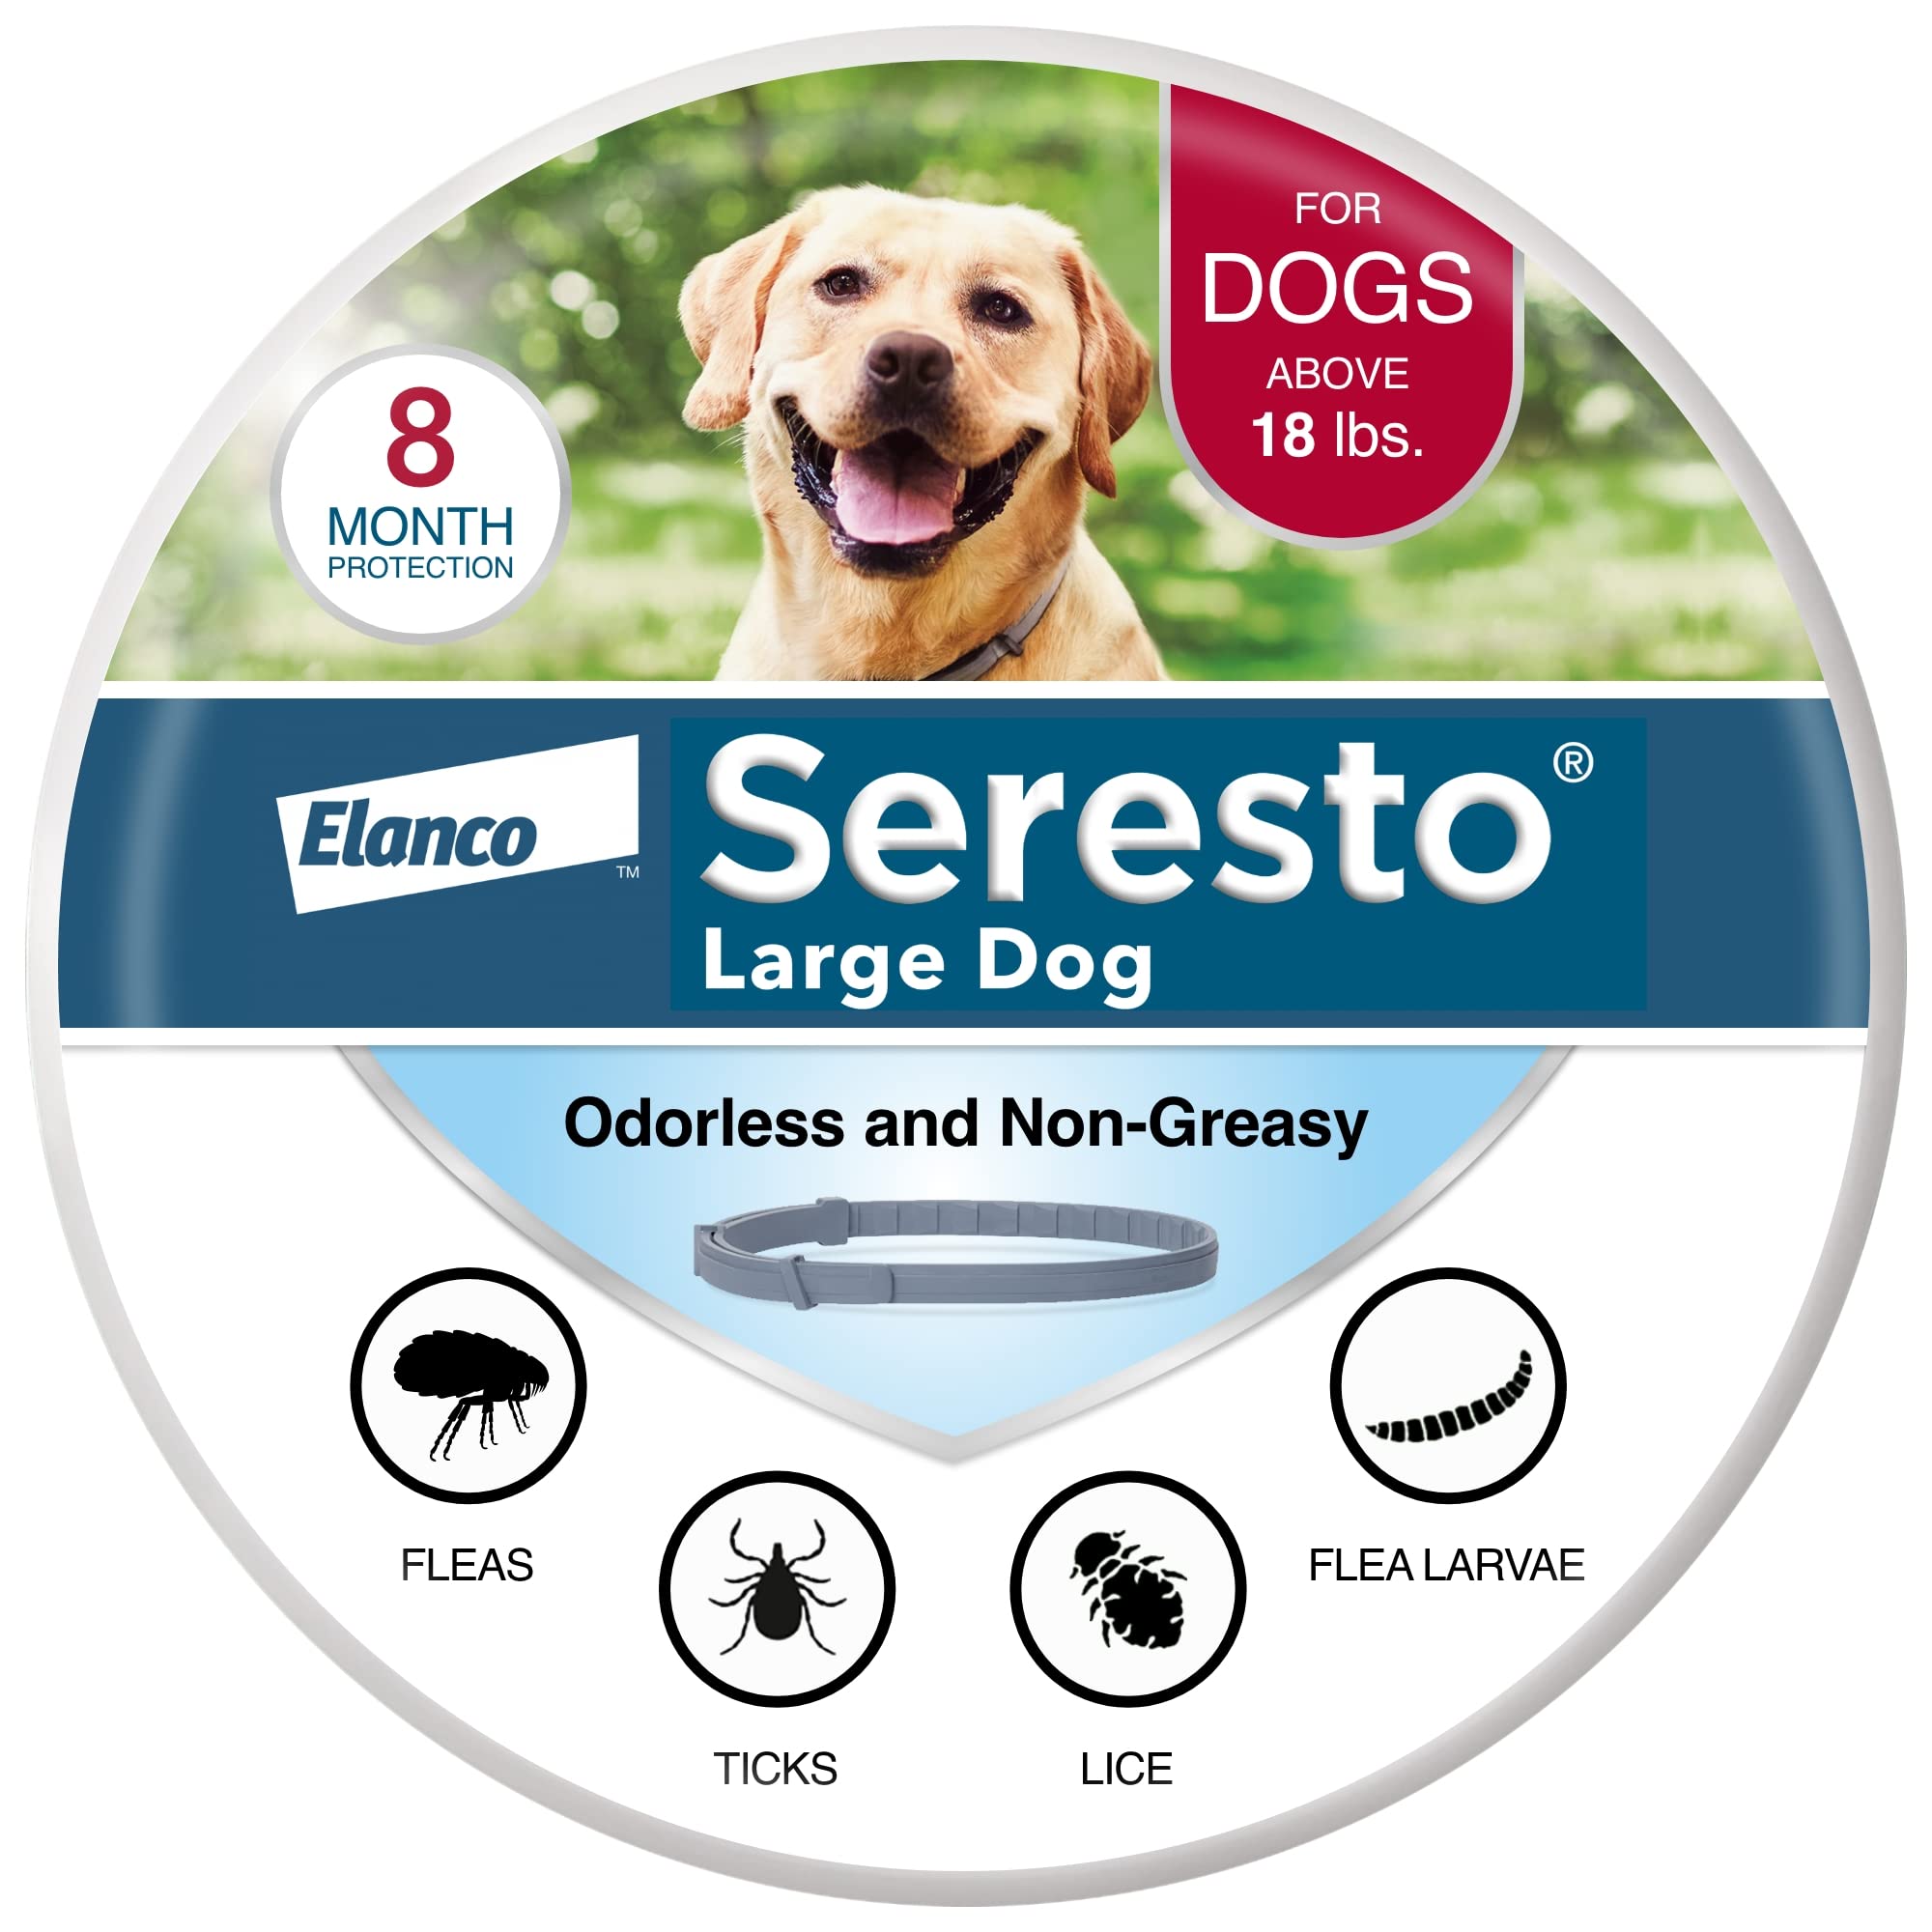 Seresto 대형견 수의사가 권장하는 18파운드 이상의 개를 위한 벼룩 및 진드기 치료 및 예방 칼라. | 8개월 보호